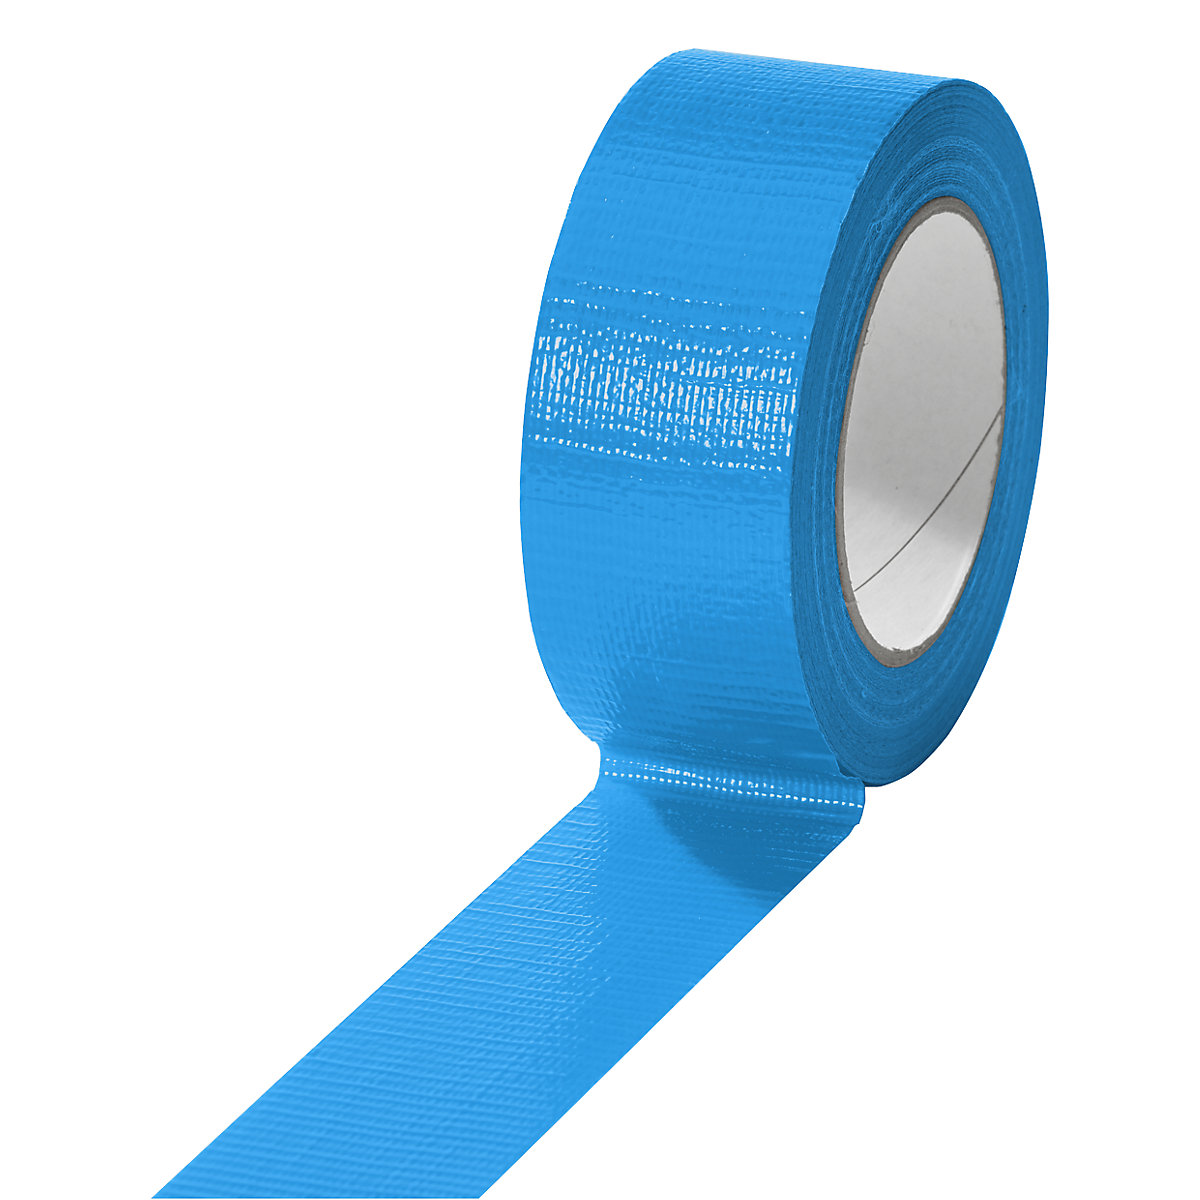 Cinta de tejido, en diferentes colores, UE 24 rollos, azul, anchura de cinta 38 mm-6